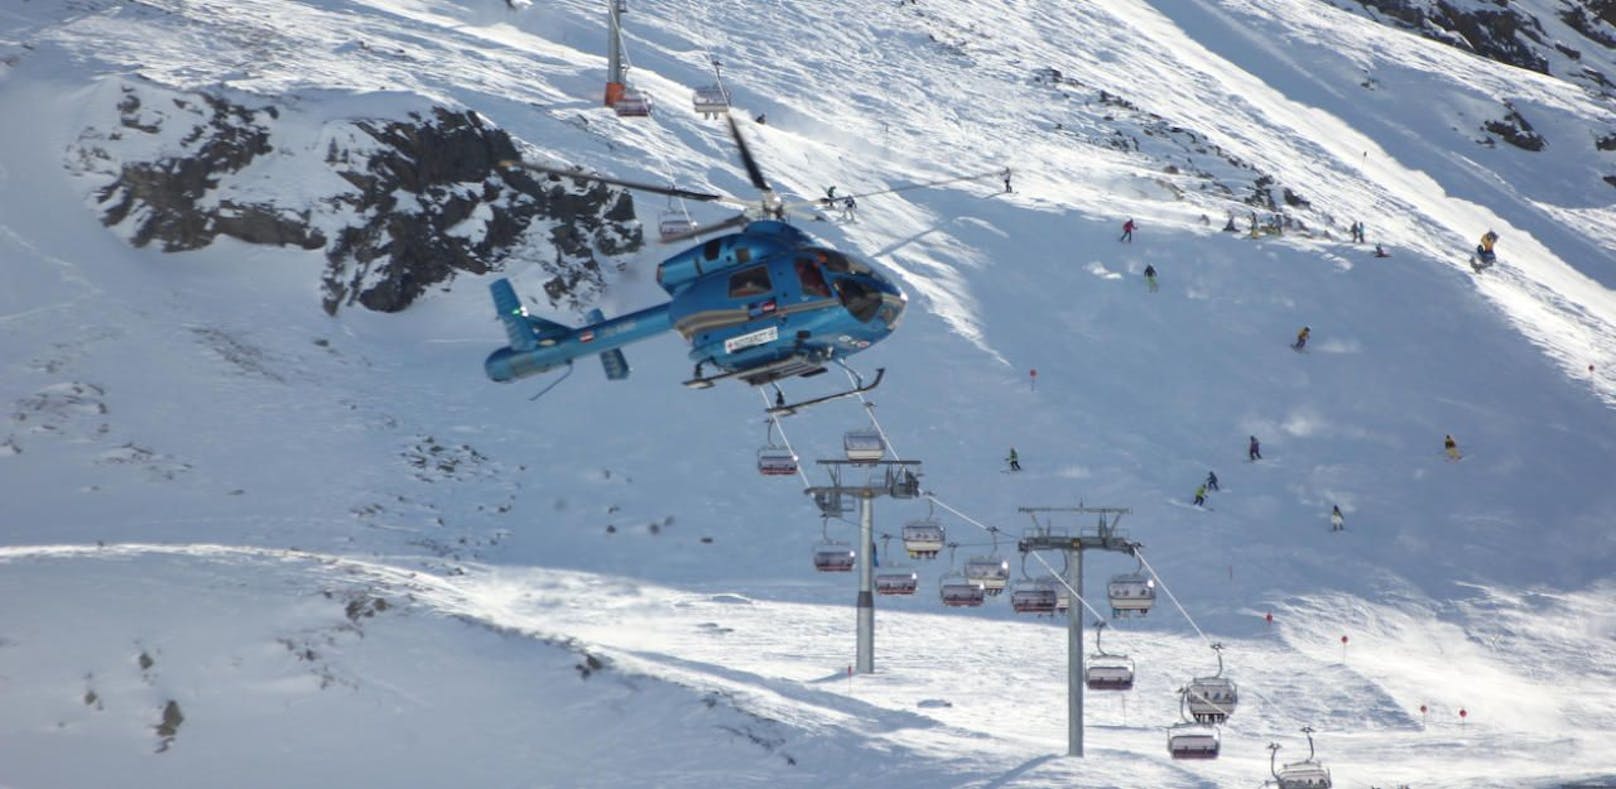 Die 17-Jährige wurde bei dem Ski-Unfall verletzt.